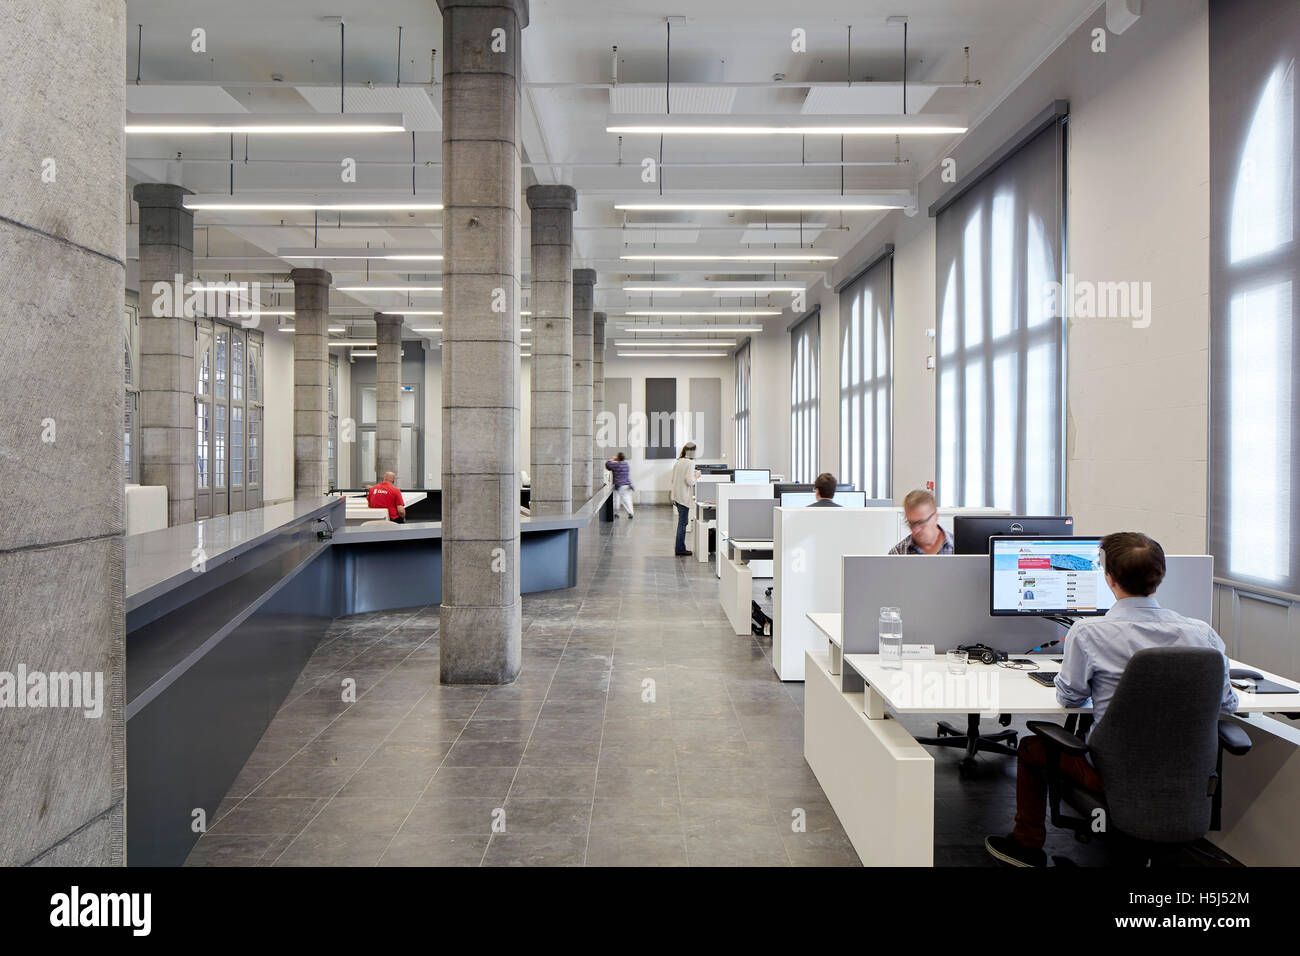 Aprire ufficio del piano nella restaurata stazione dei vigili del fuoco. Casa porta ad Anversa, Belgio. Architetto: Zaha Hadid Architects, 2016. Foto Stock